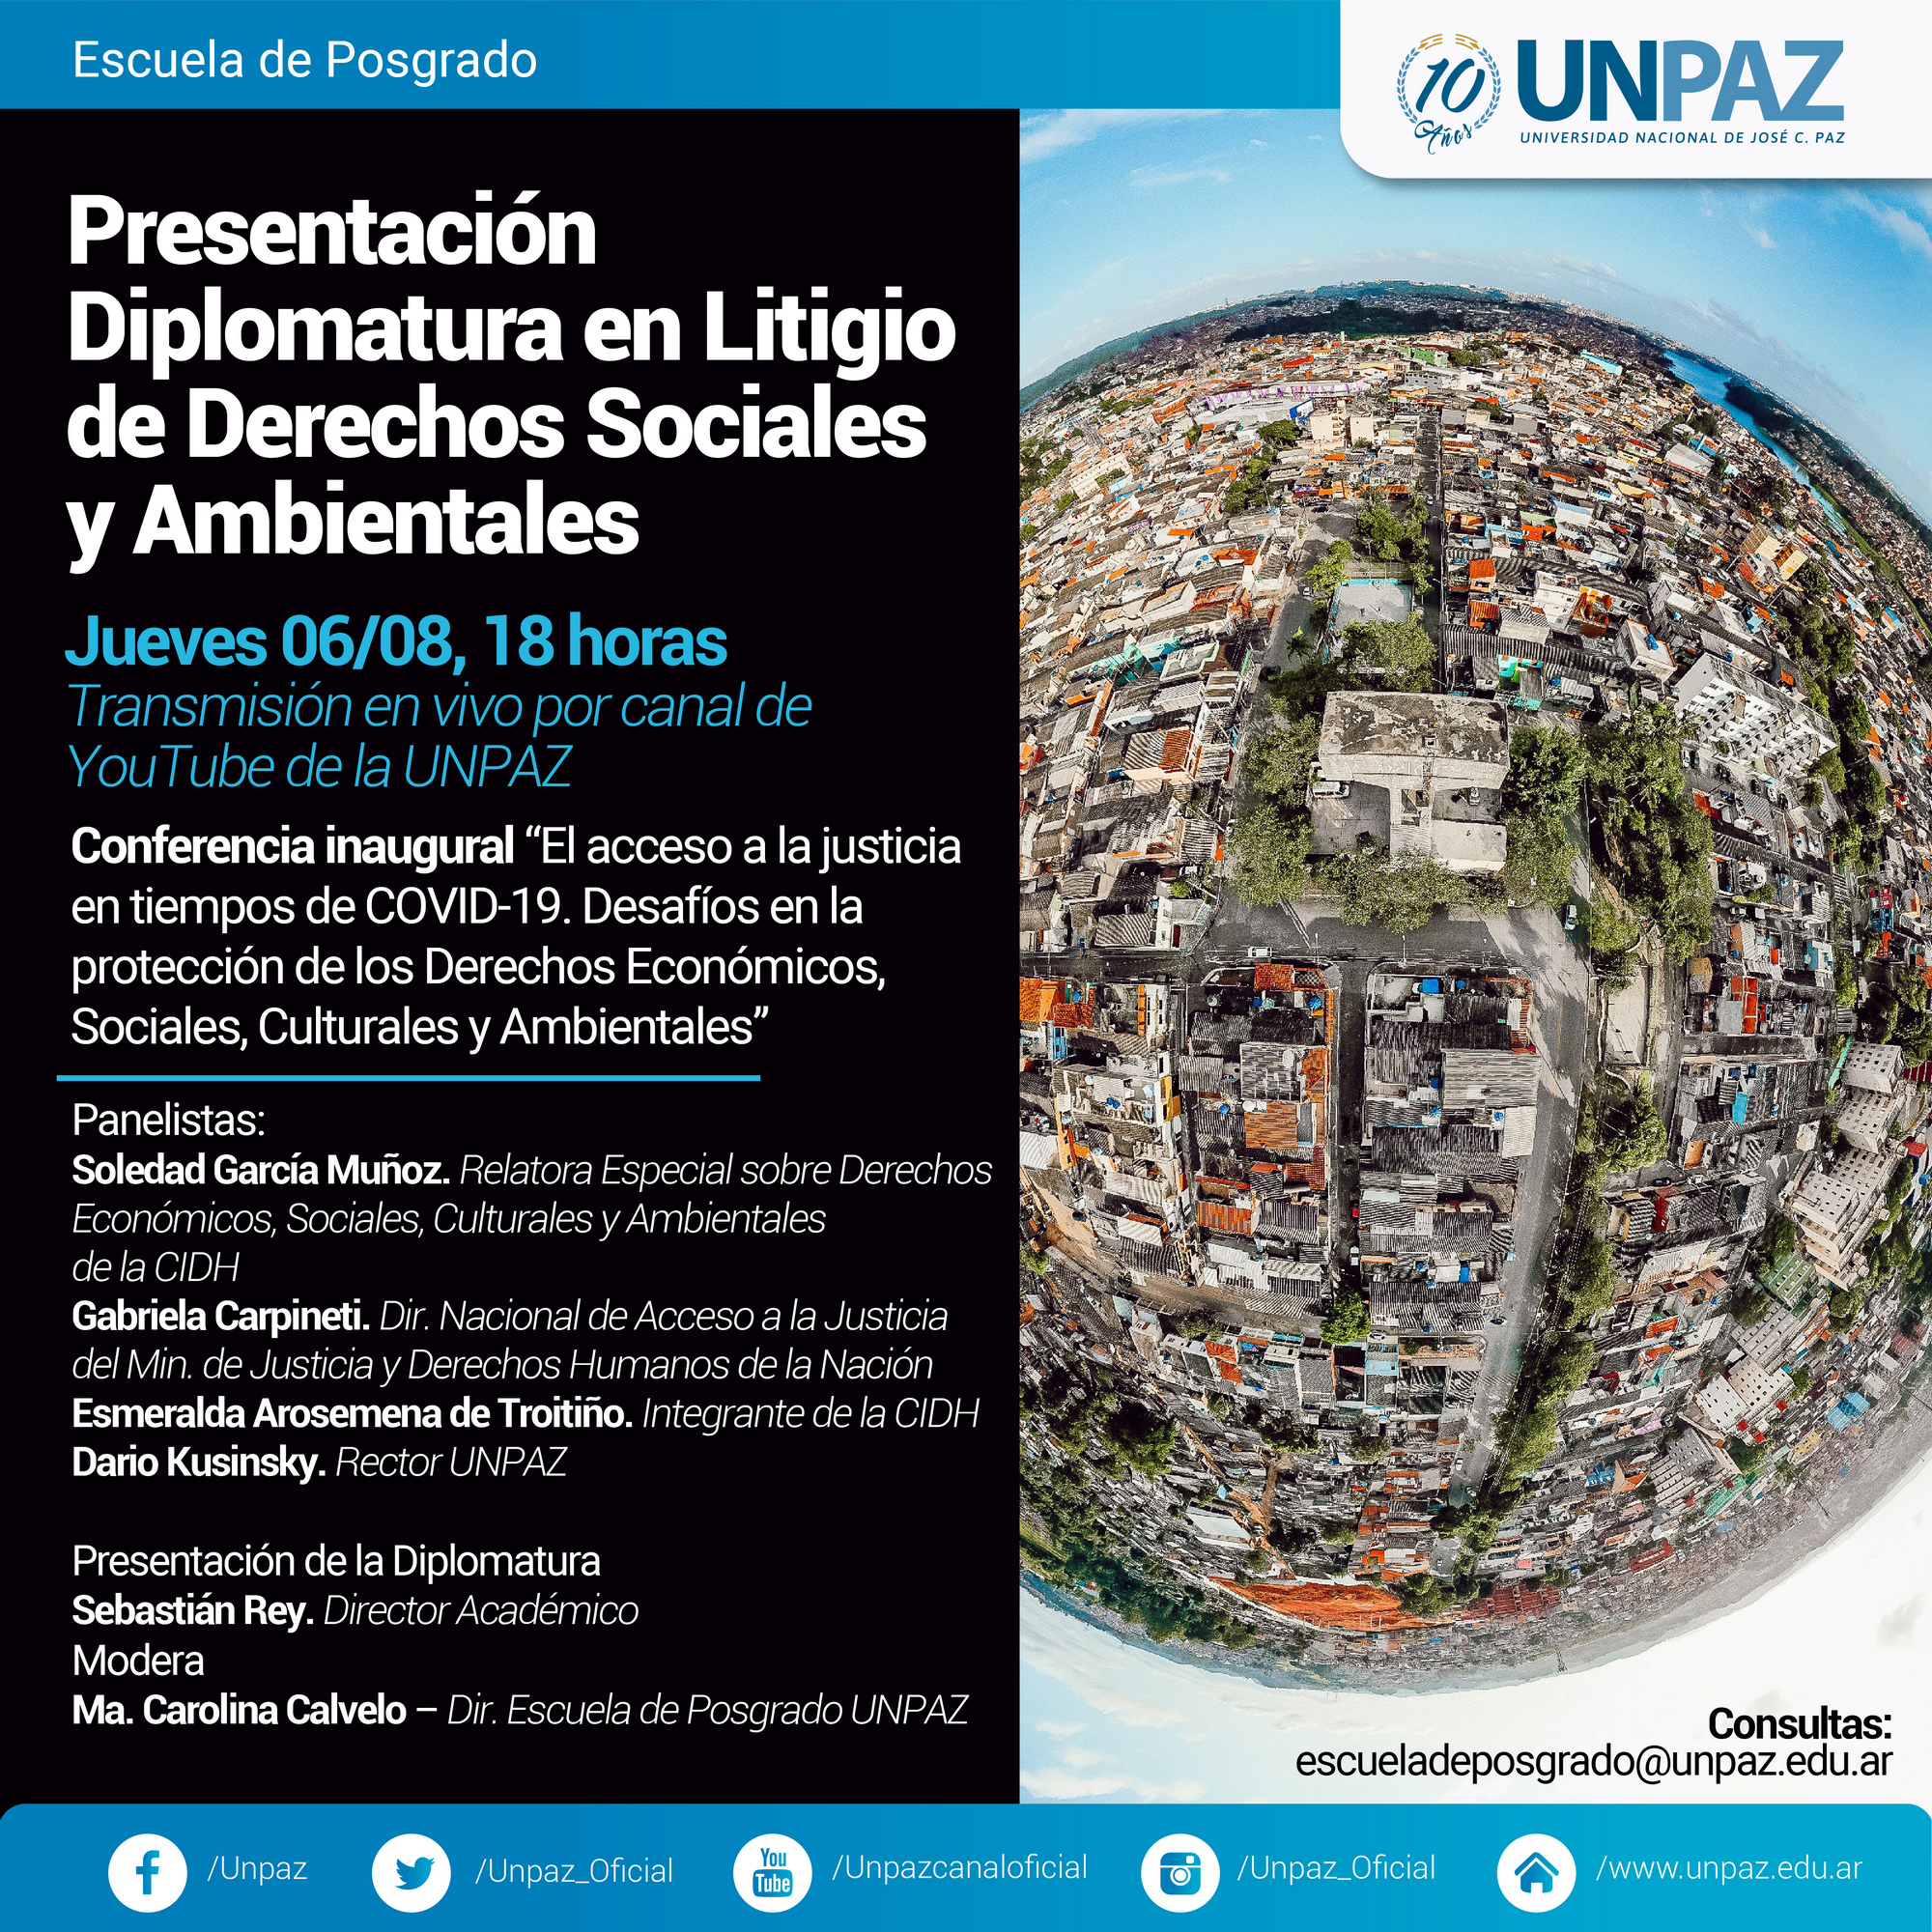 Presentación de la Diplomatura en Litigio de Derechos Sociales y Ambientales